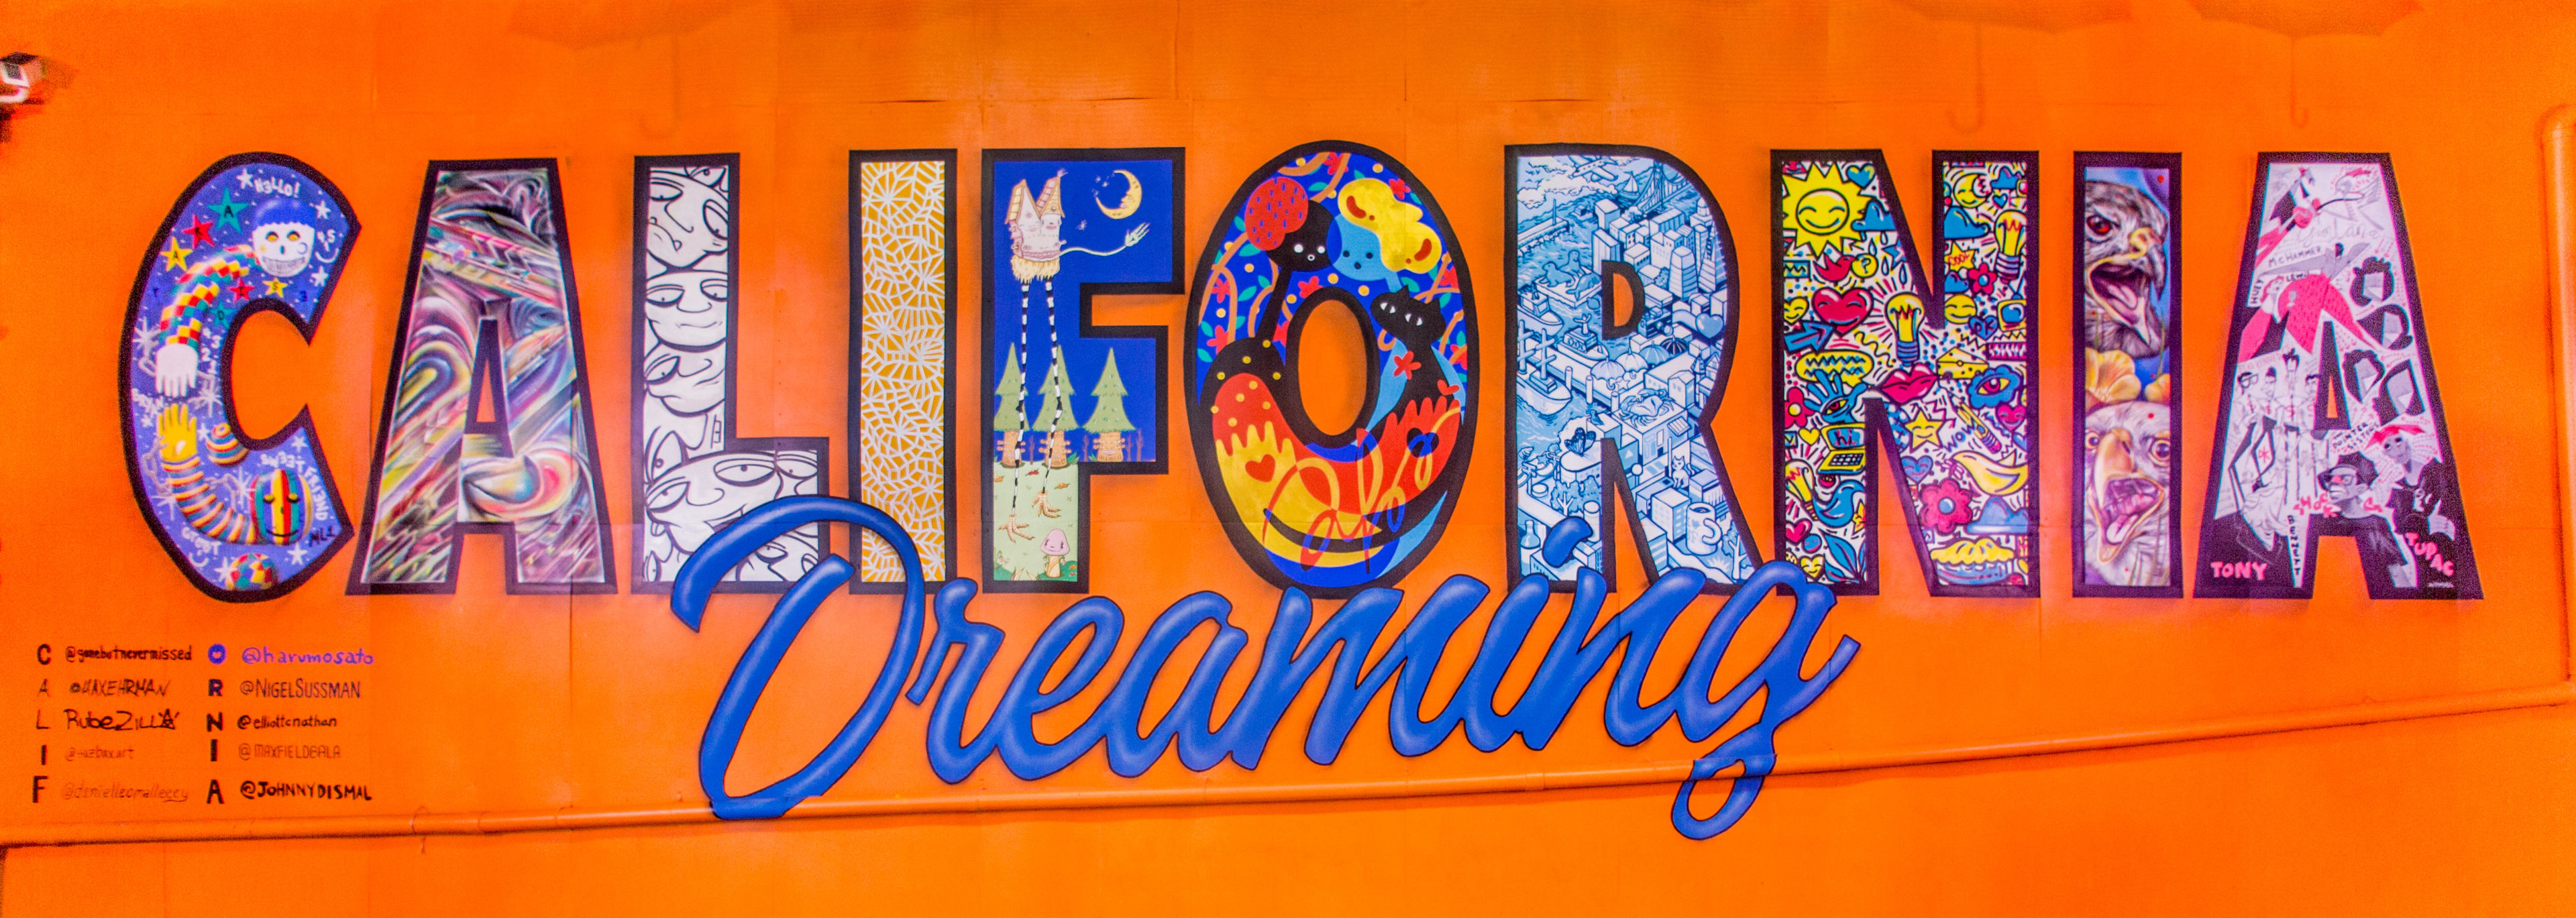 لوحة جدارية ملونة تقول "California Dreaming" في Umbrella Alley، أوكلاند، كاليفورنيا